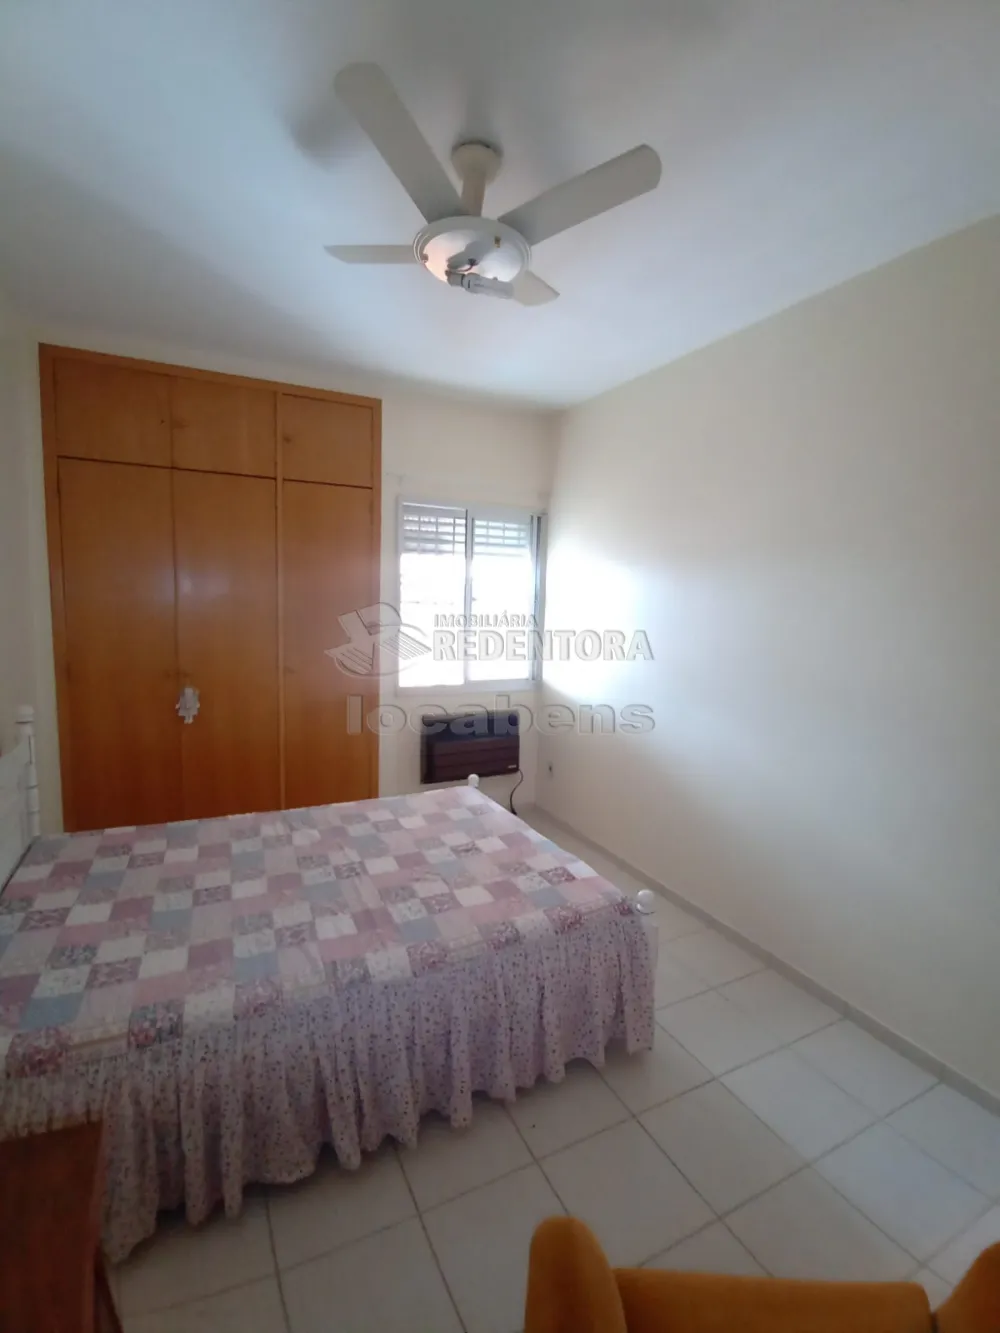 Alugar Apartamento / Padrão em São José do Rio Preto apenas R$ 1.400,00 - Foto 7